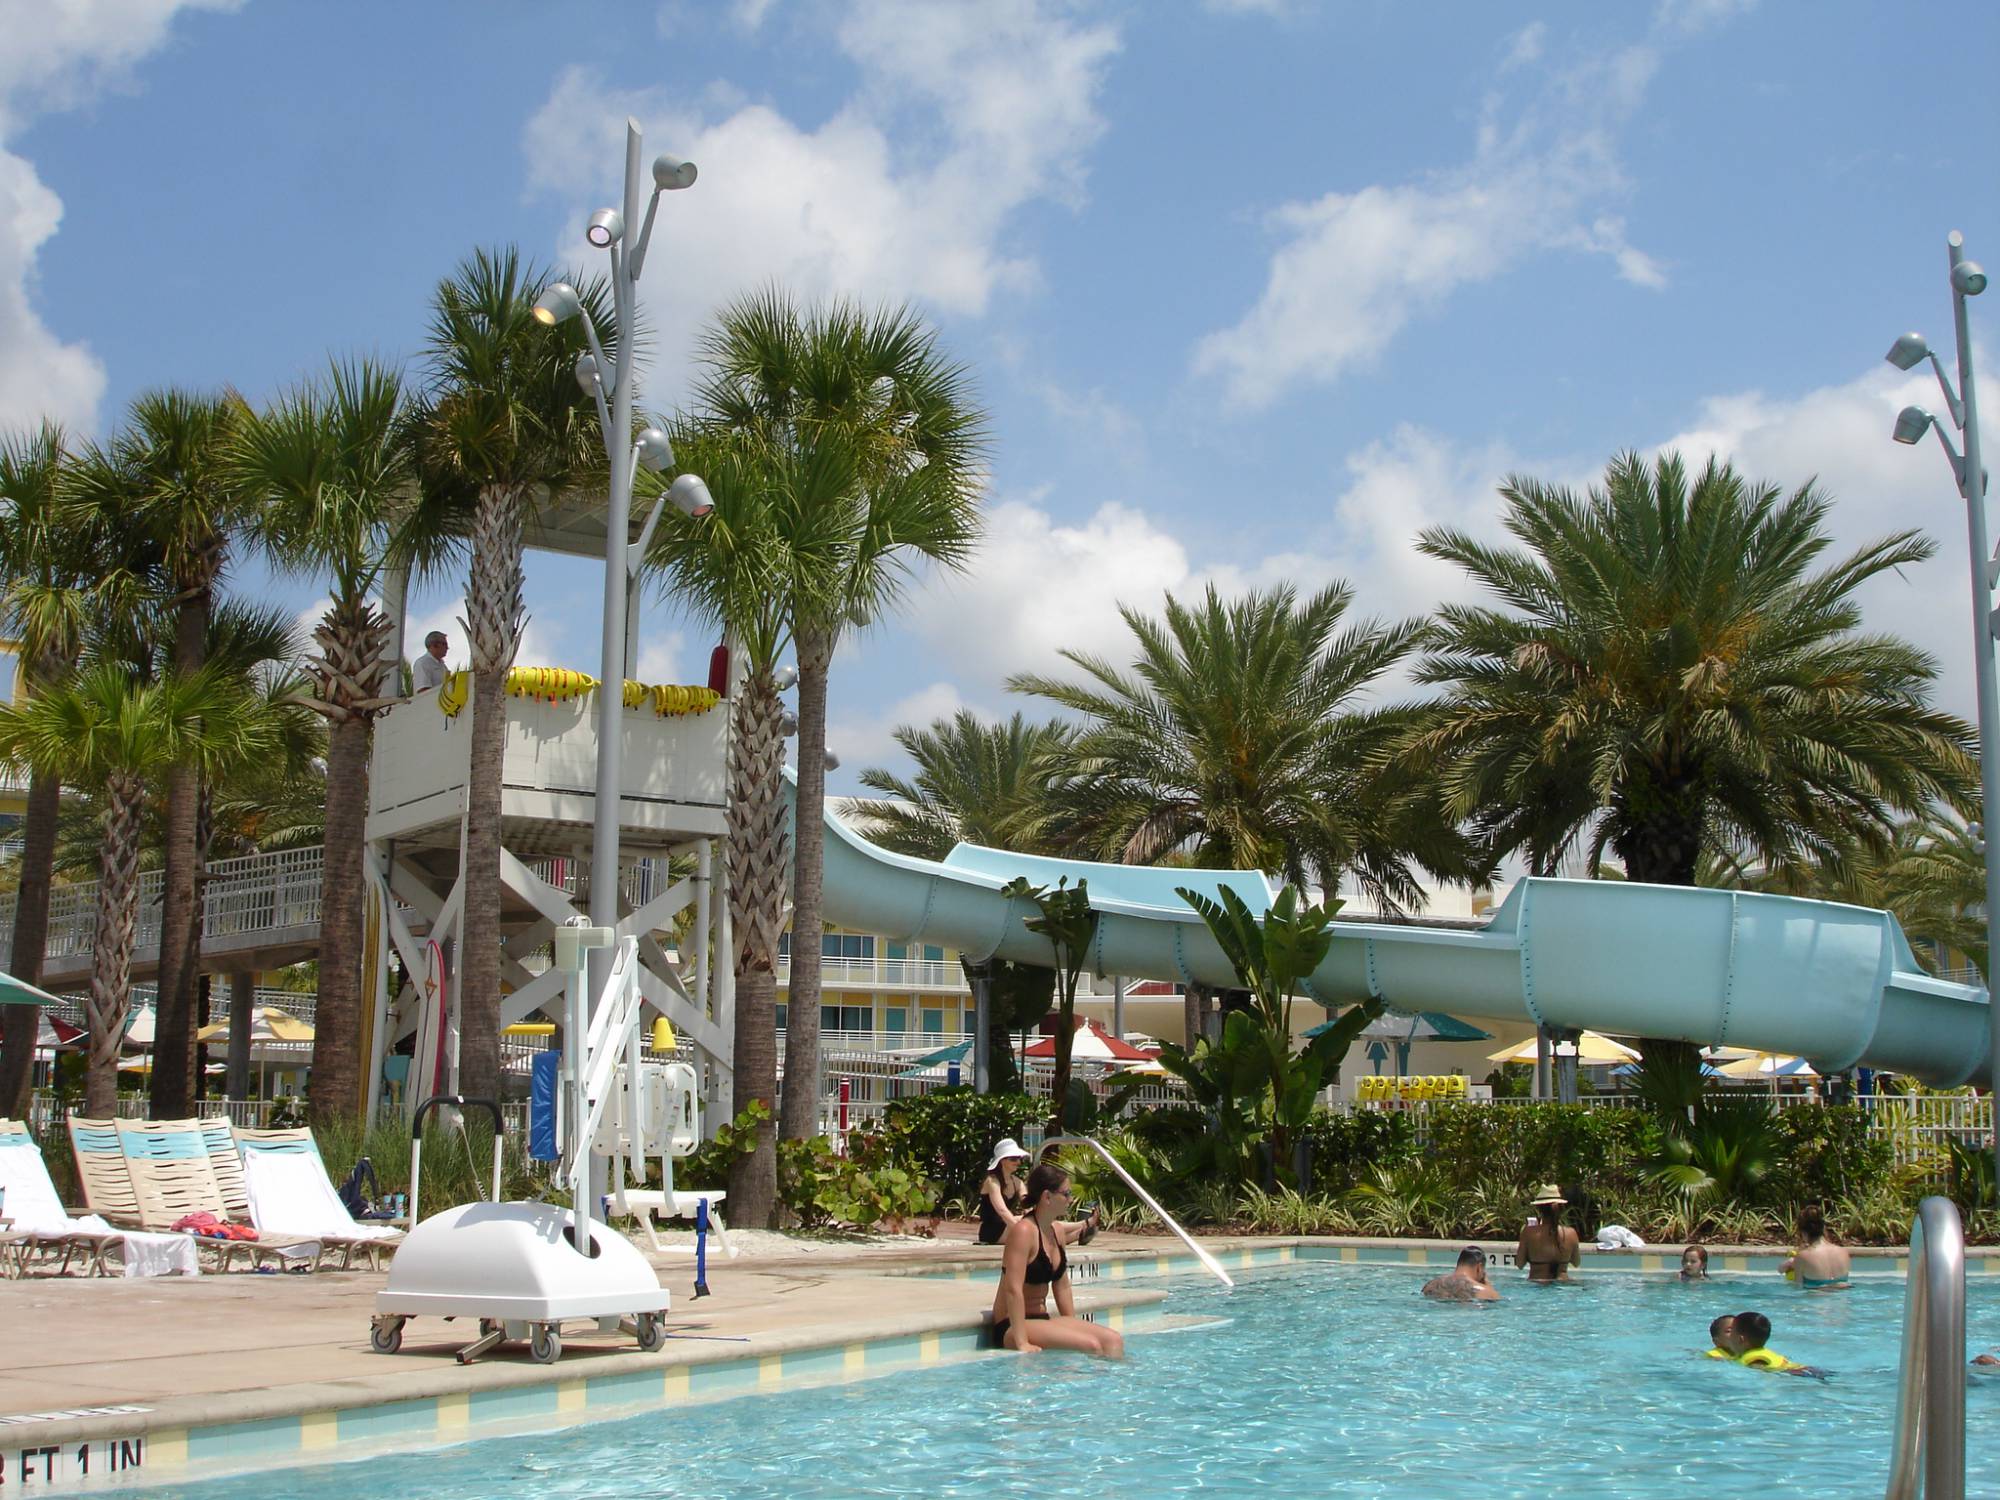 Enjoy a retro vacation at Universal Orlando's Cabana Bay Beach Resort |PassPorter.com